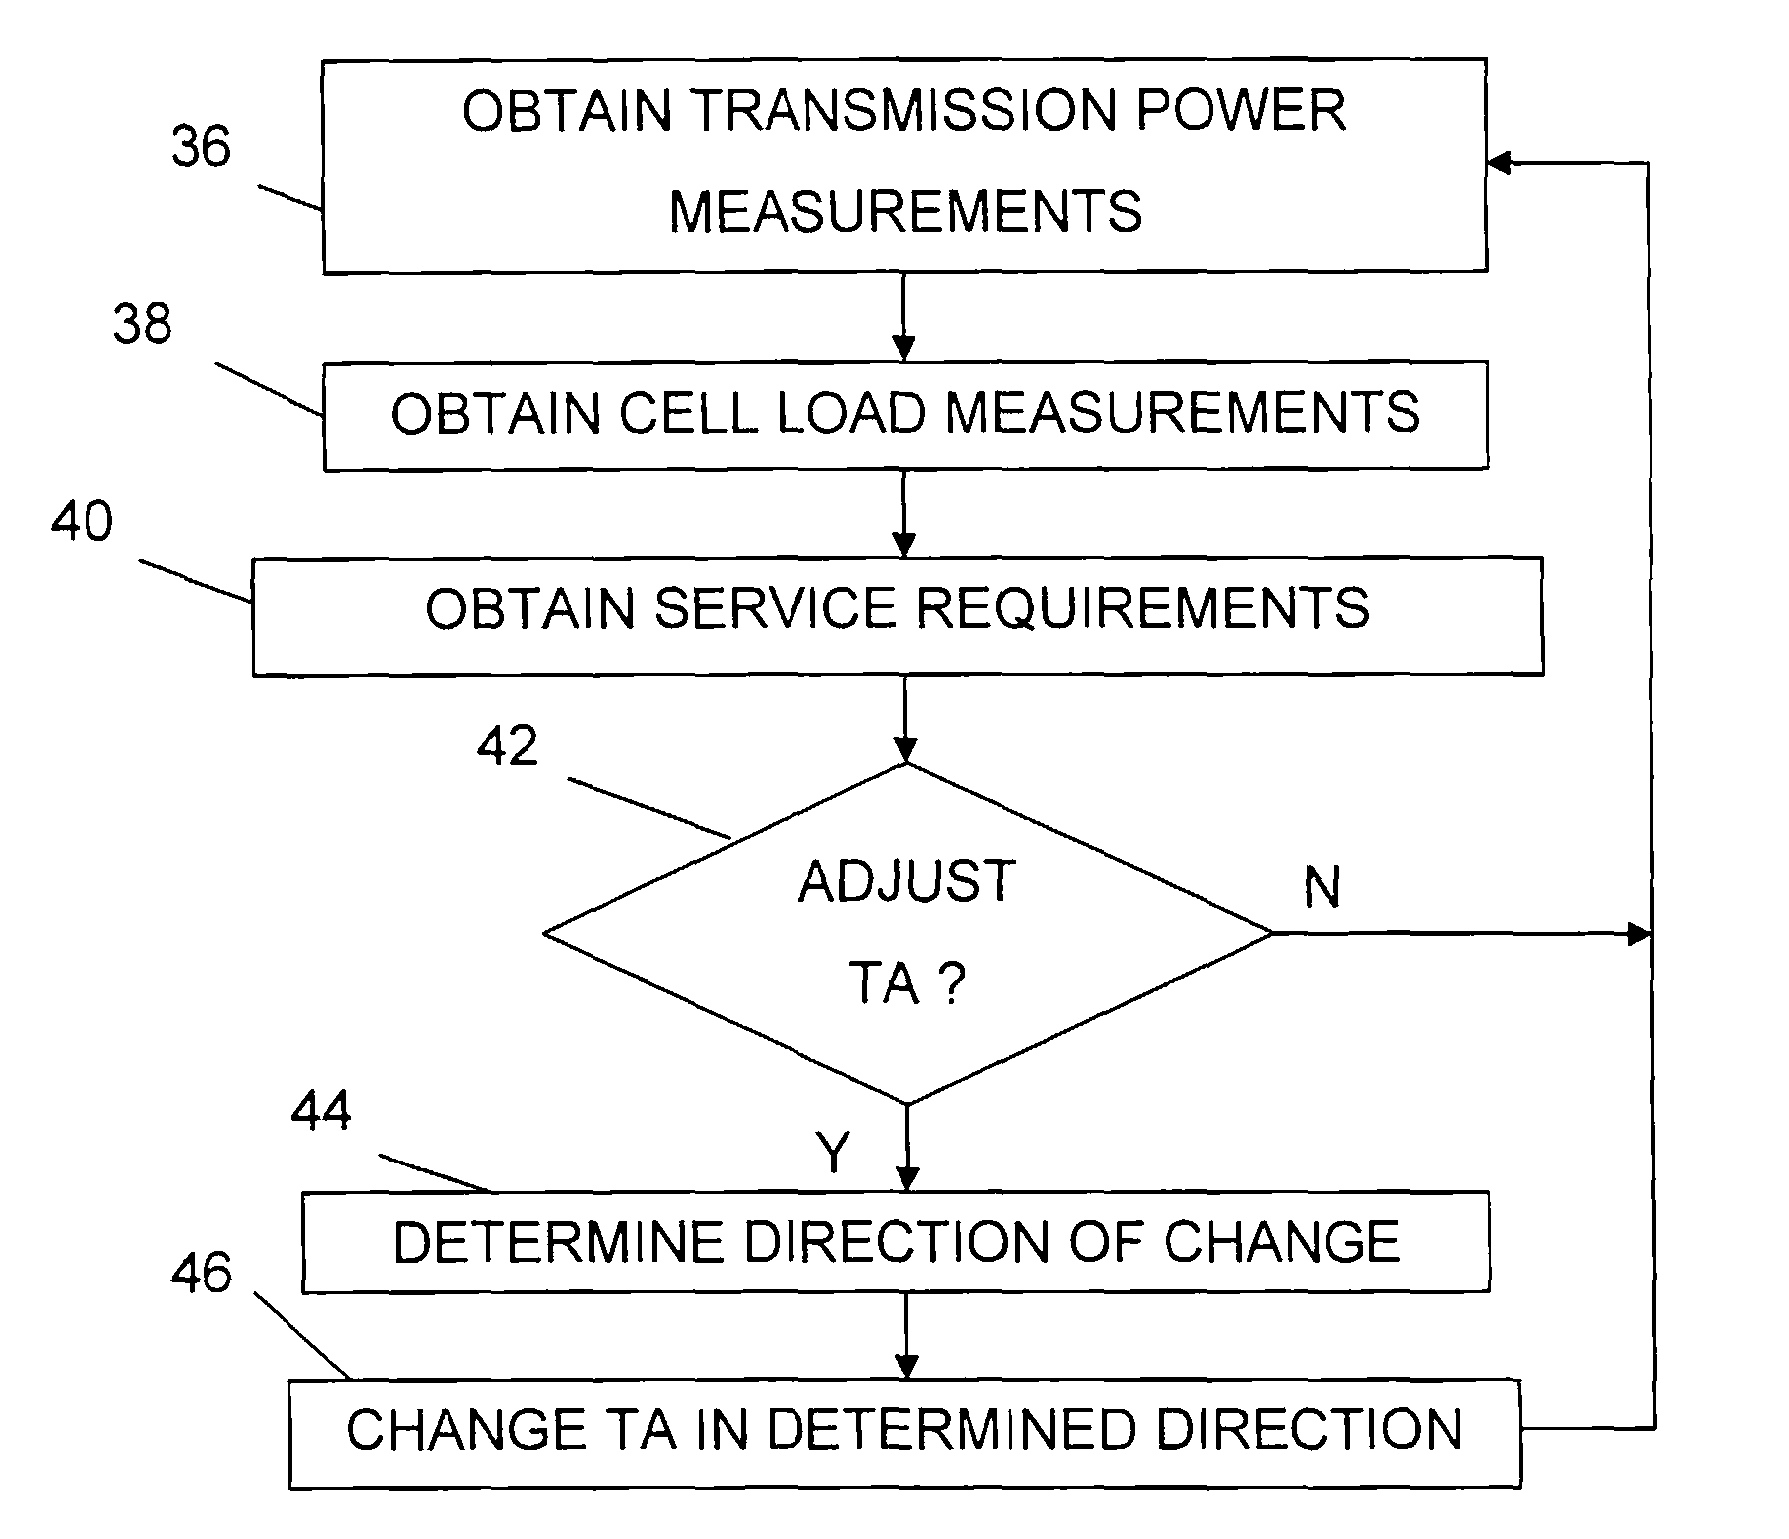 Adjusting the Targeted Number of Transmission Attempts